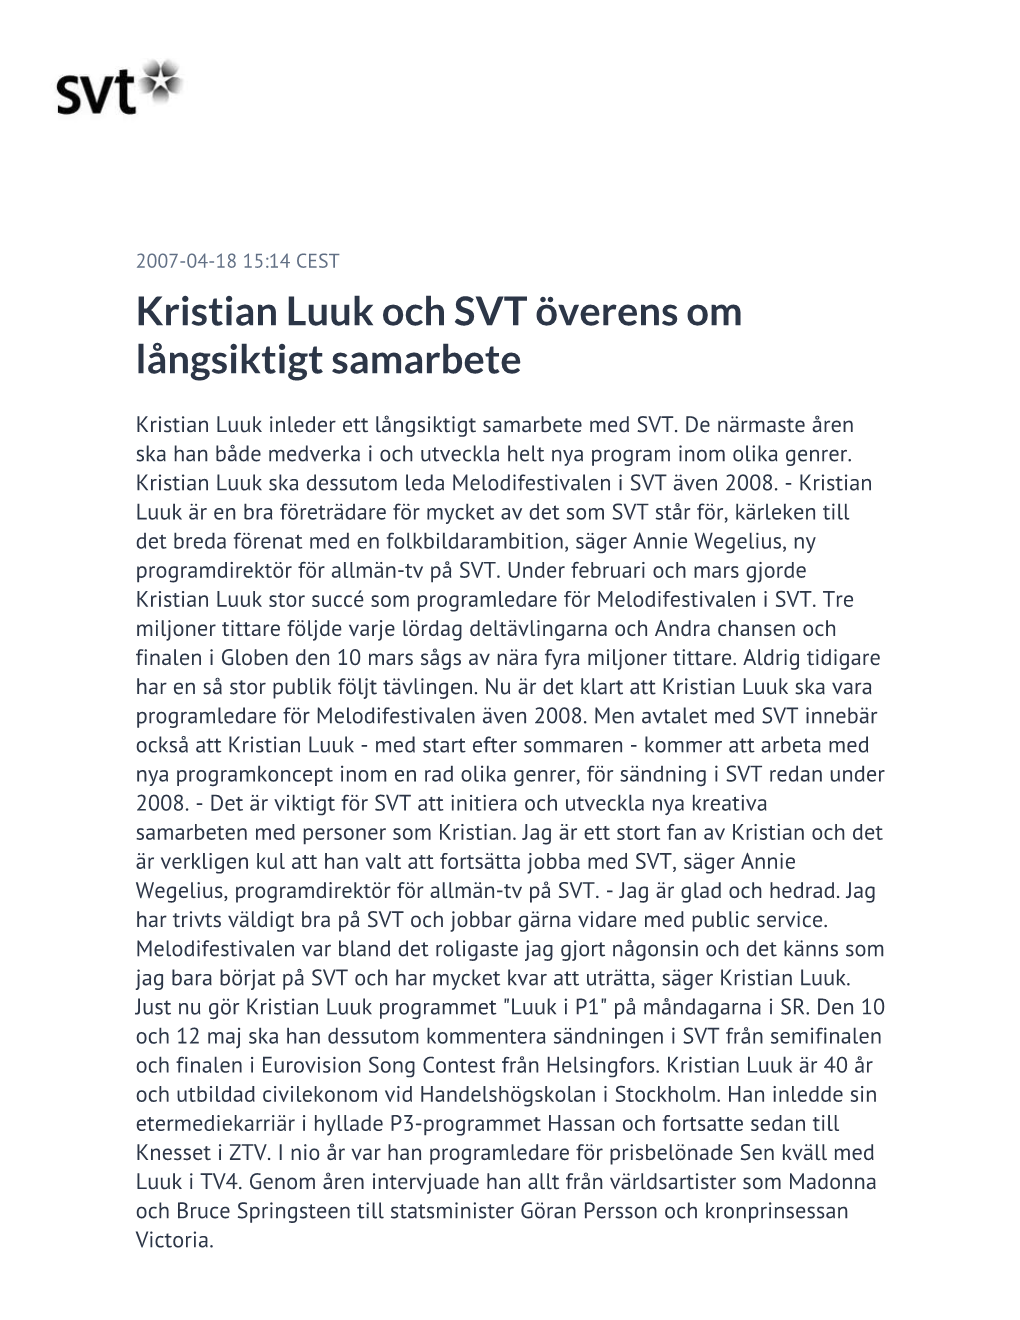 Kristian Luuk Och SVT Överens Om Långsiktigt Samarbete